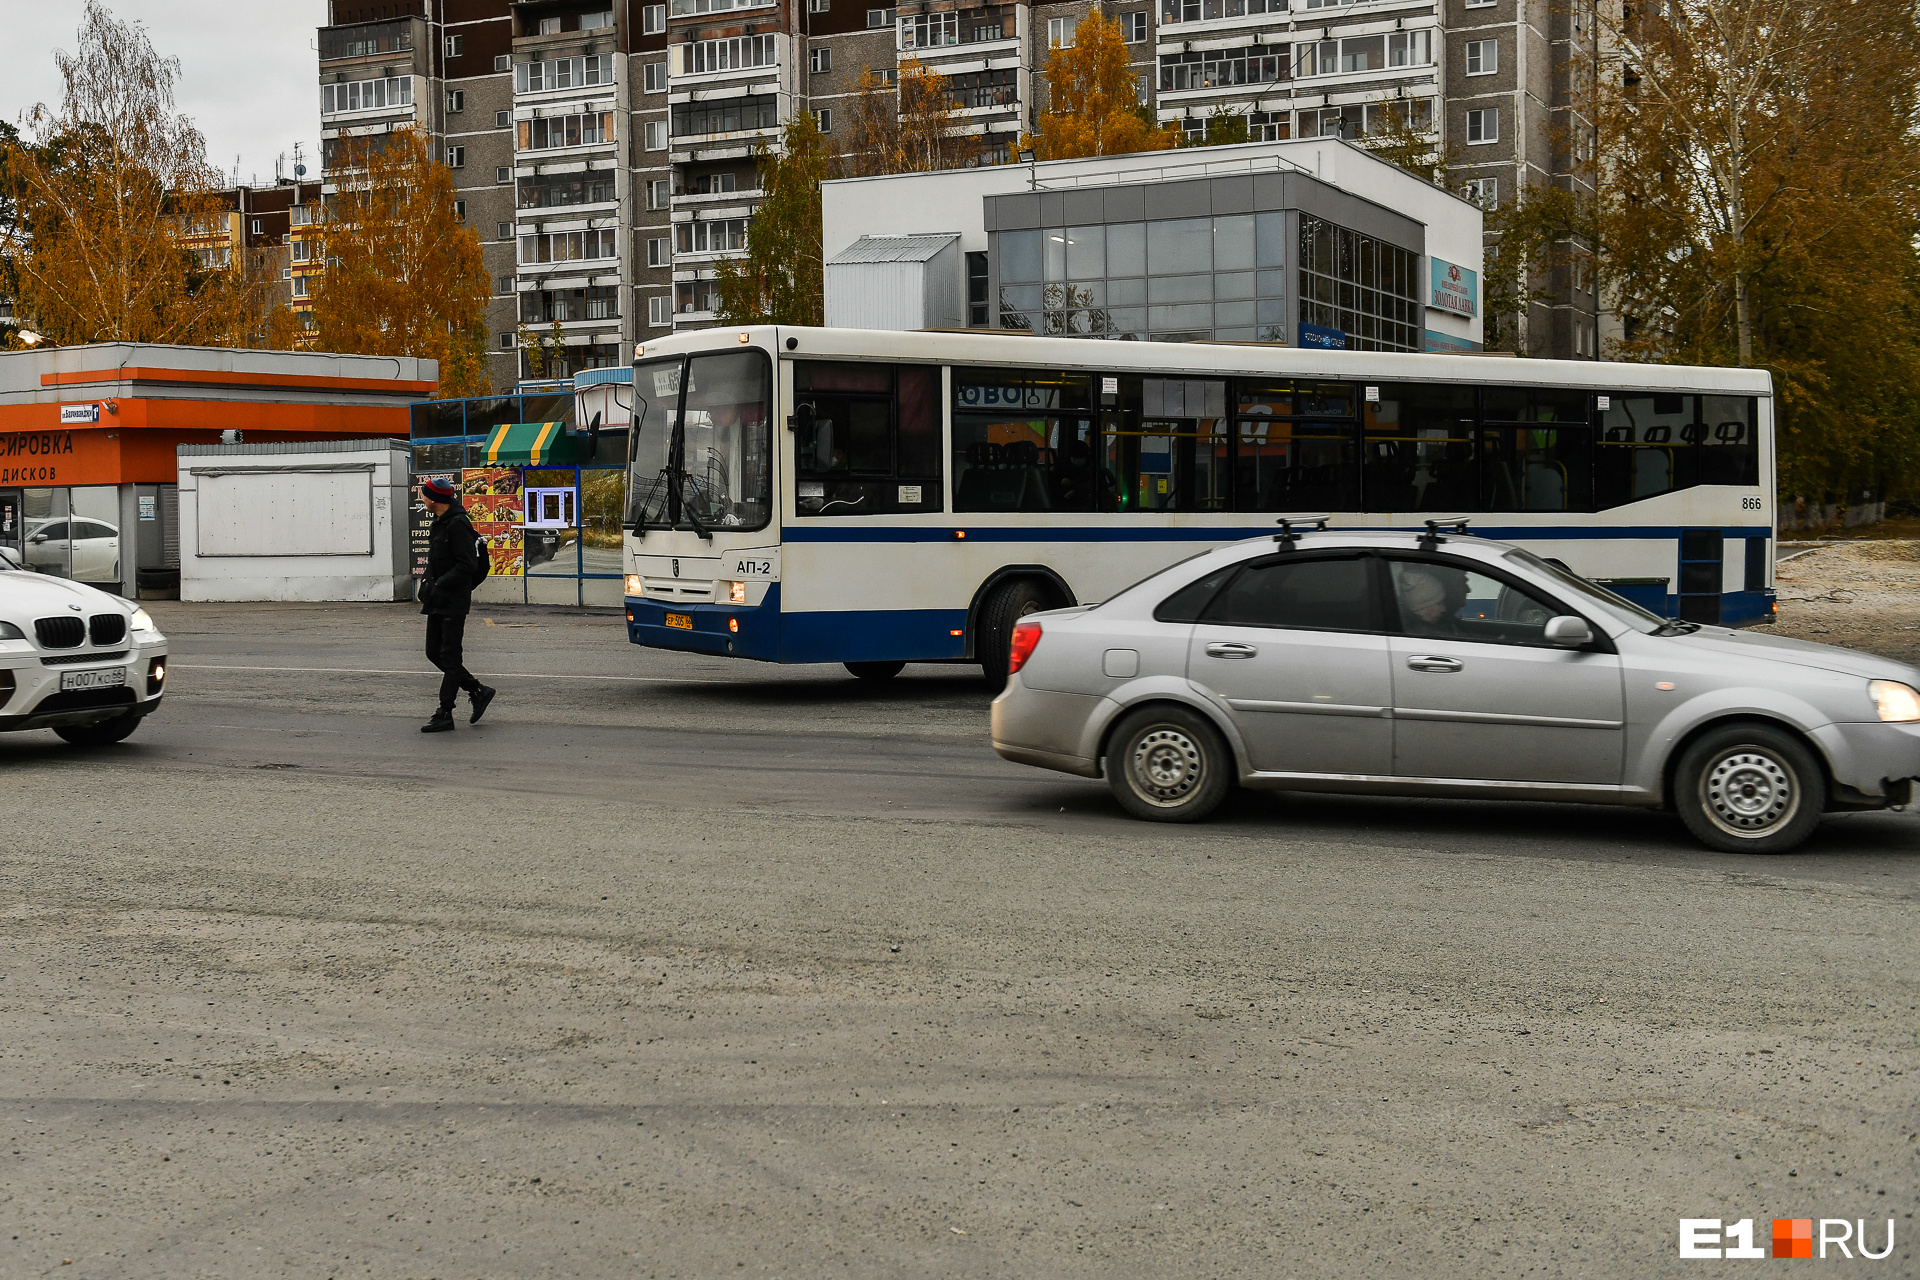 Чтобы подъехать к остановке, автобусам в Кольцово приходится разворачиваться в противоположную сторону, через две полосы. Водители вынуждены пропускать не только машины, но и пешеходов, которые бегают по проезжей части